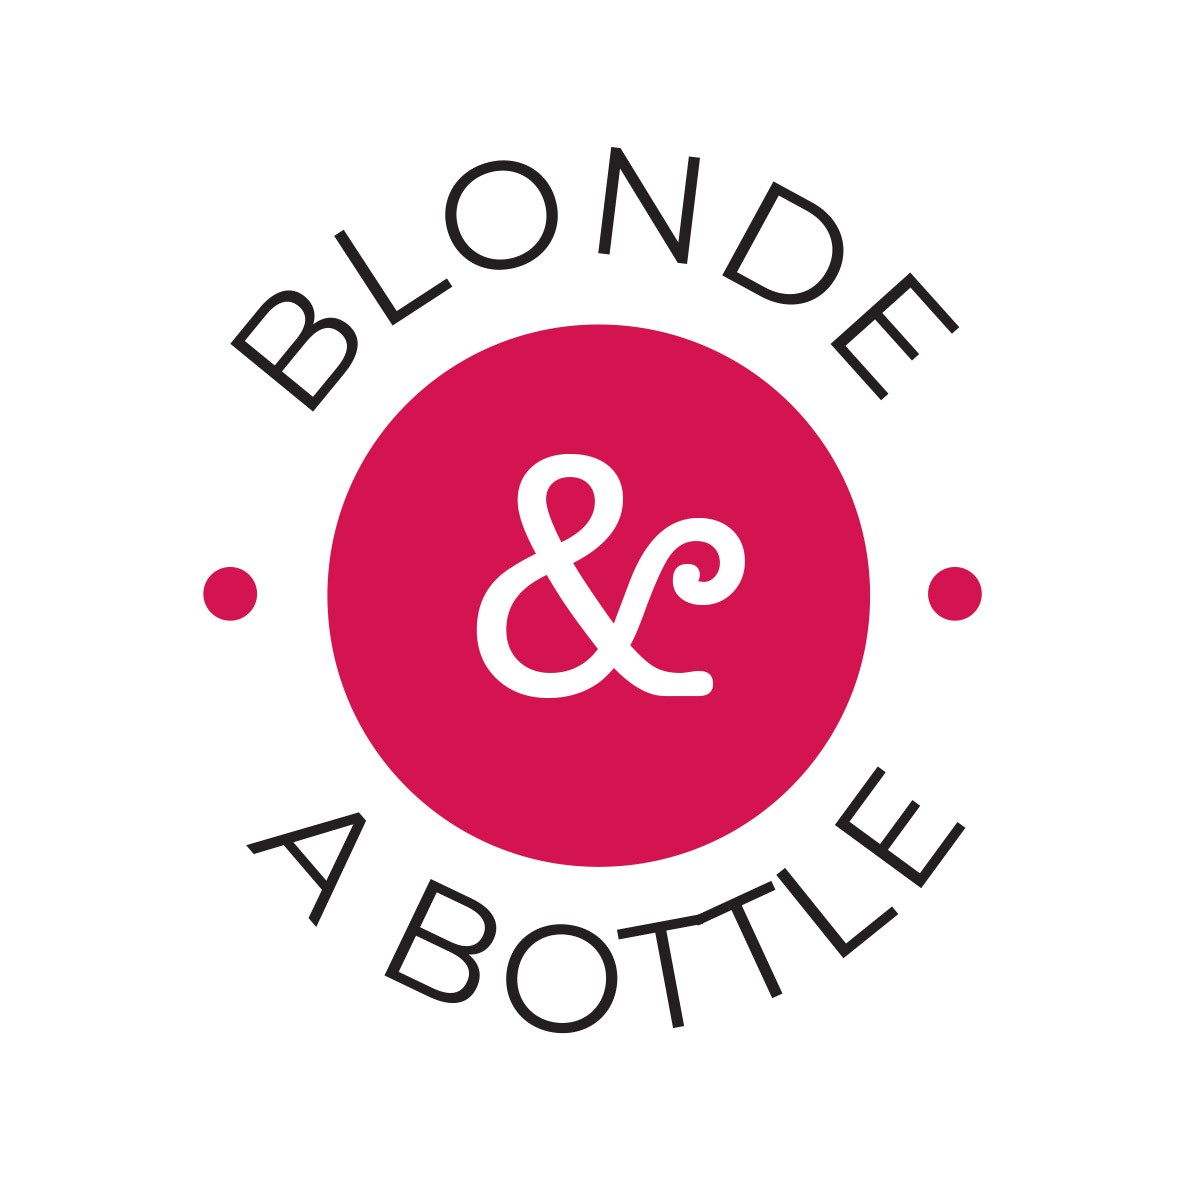 Blonde & A Bottle concept 6